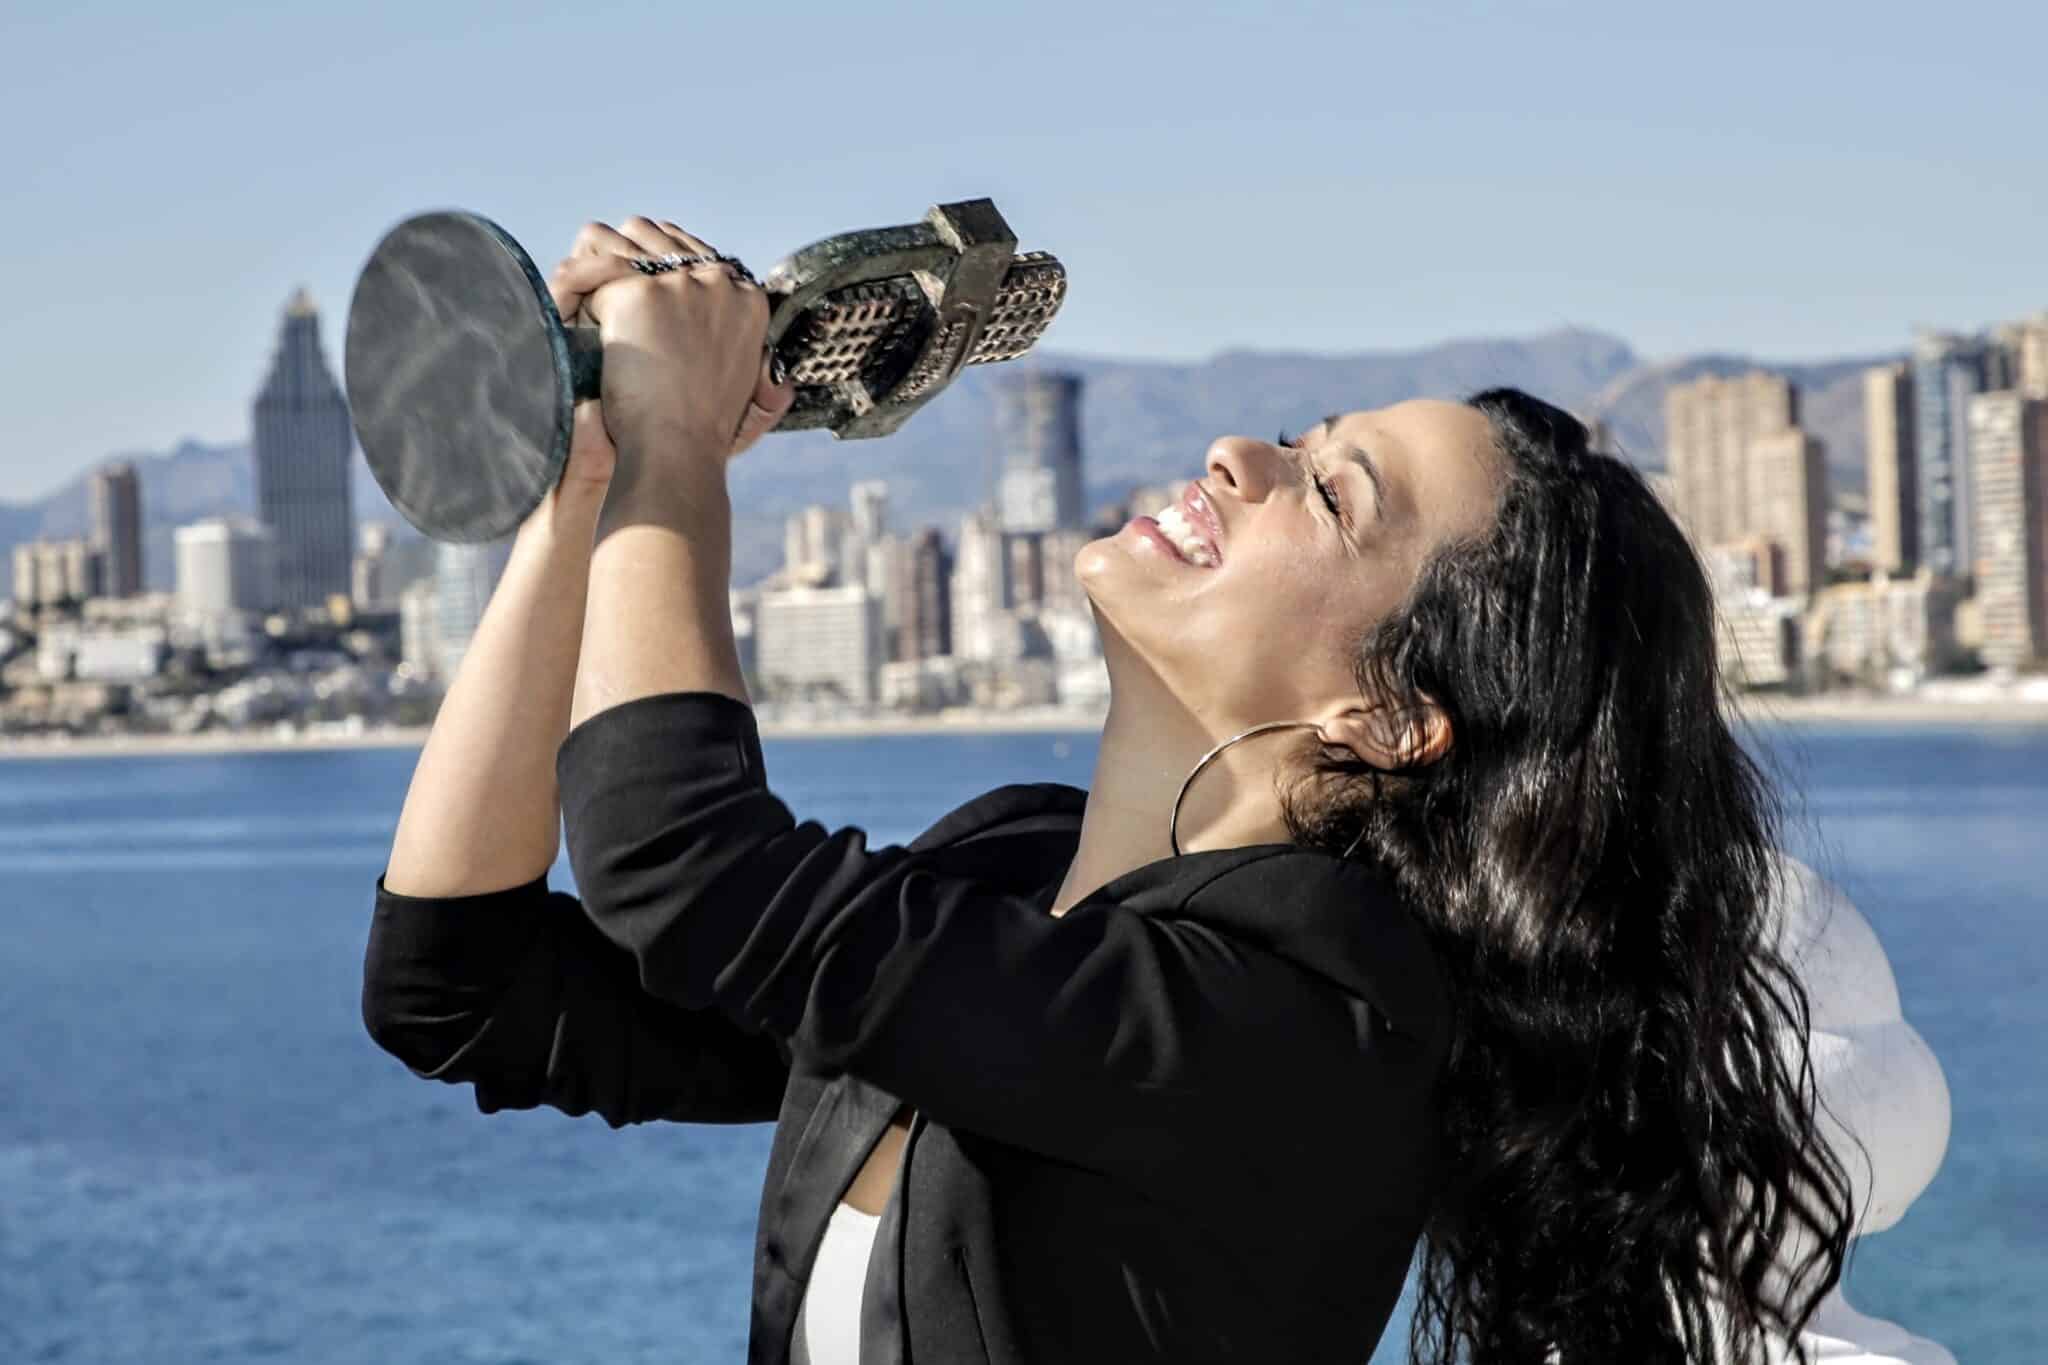 La artista Chanel ganadora de Benidorm Fest 2022, posa con su trofeo en el Mirador del Castillo, a 30 de enero de 2022, en Benidorm, Alicante, Comunidad Valenciana (España).